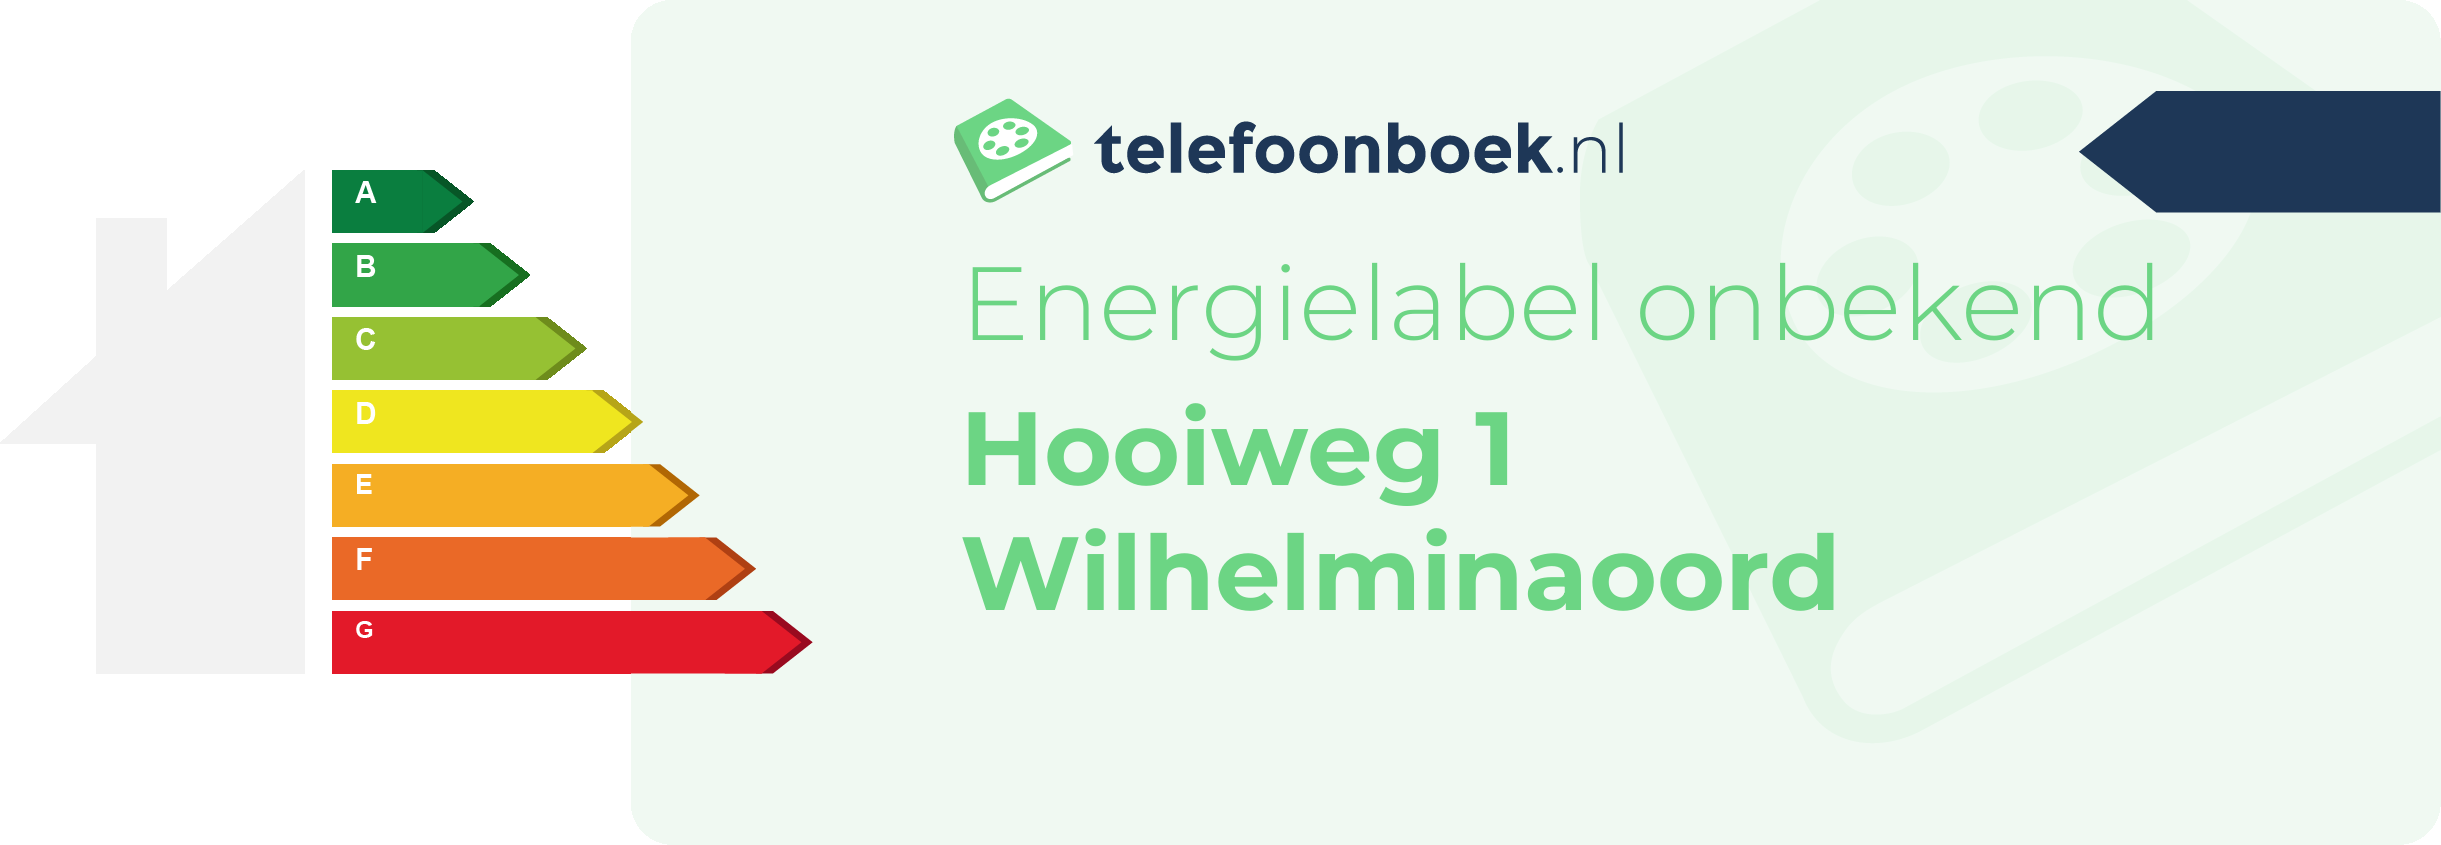 Energielabel Hooiweg 1 Wilhelminaoord